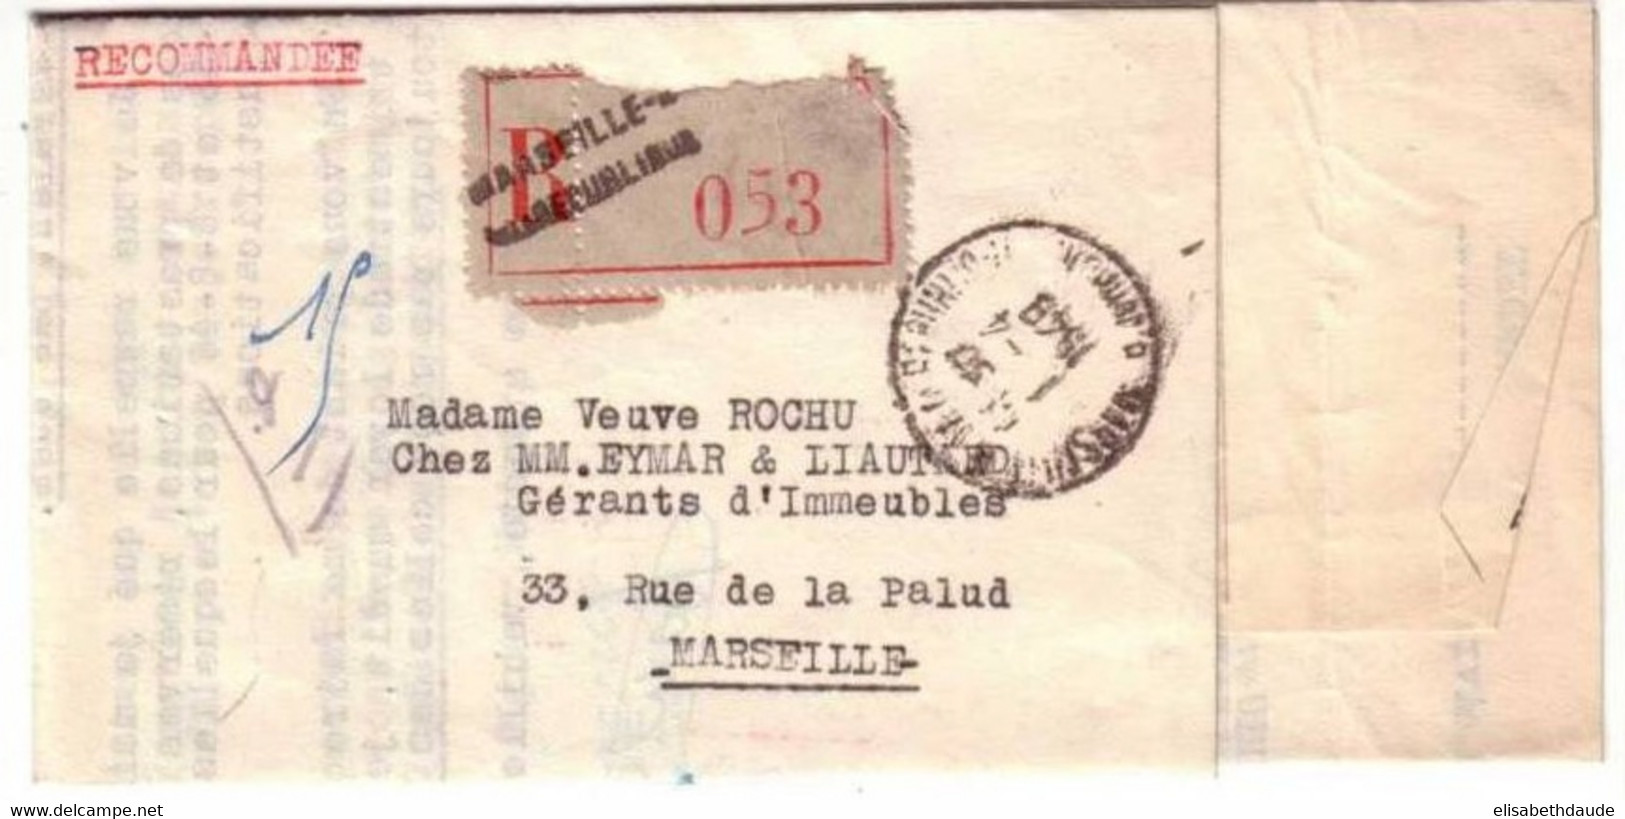 GANDON  -Yvert N°719B X 4  Sur LETTRE RECOMMANDEE De MARSEILLE REPUBLIQUE (BDR) -1948 - 1945-54 Marianne De Gandon